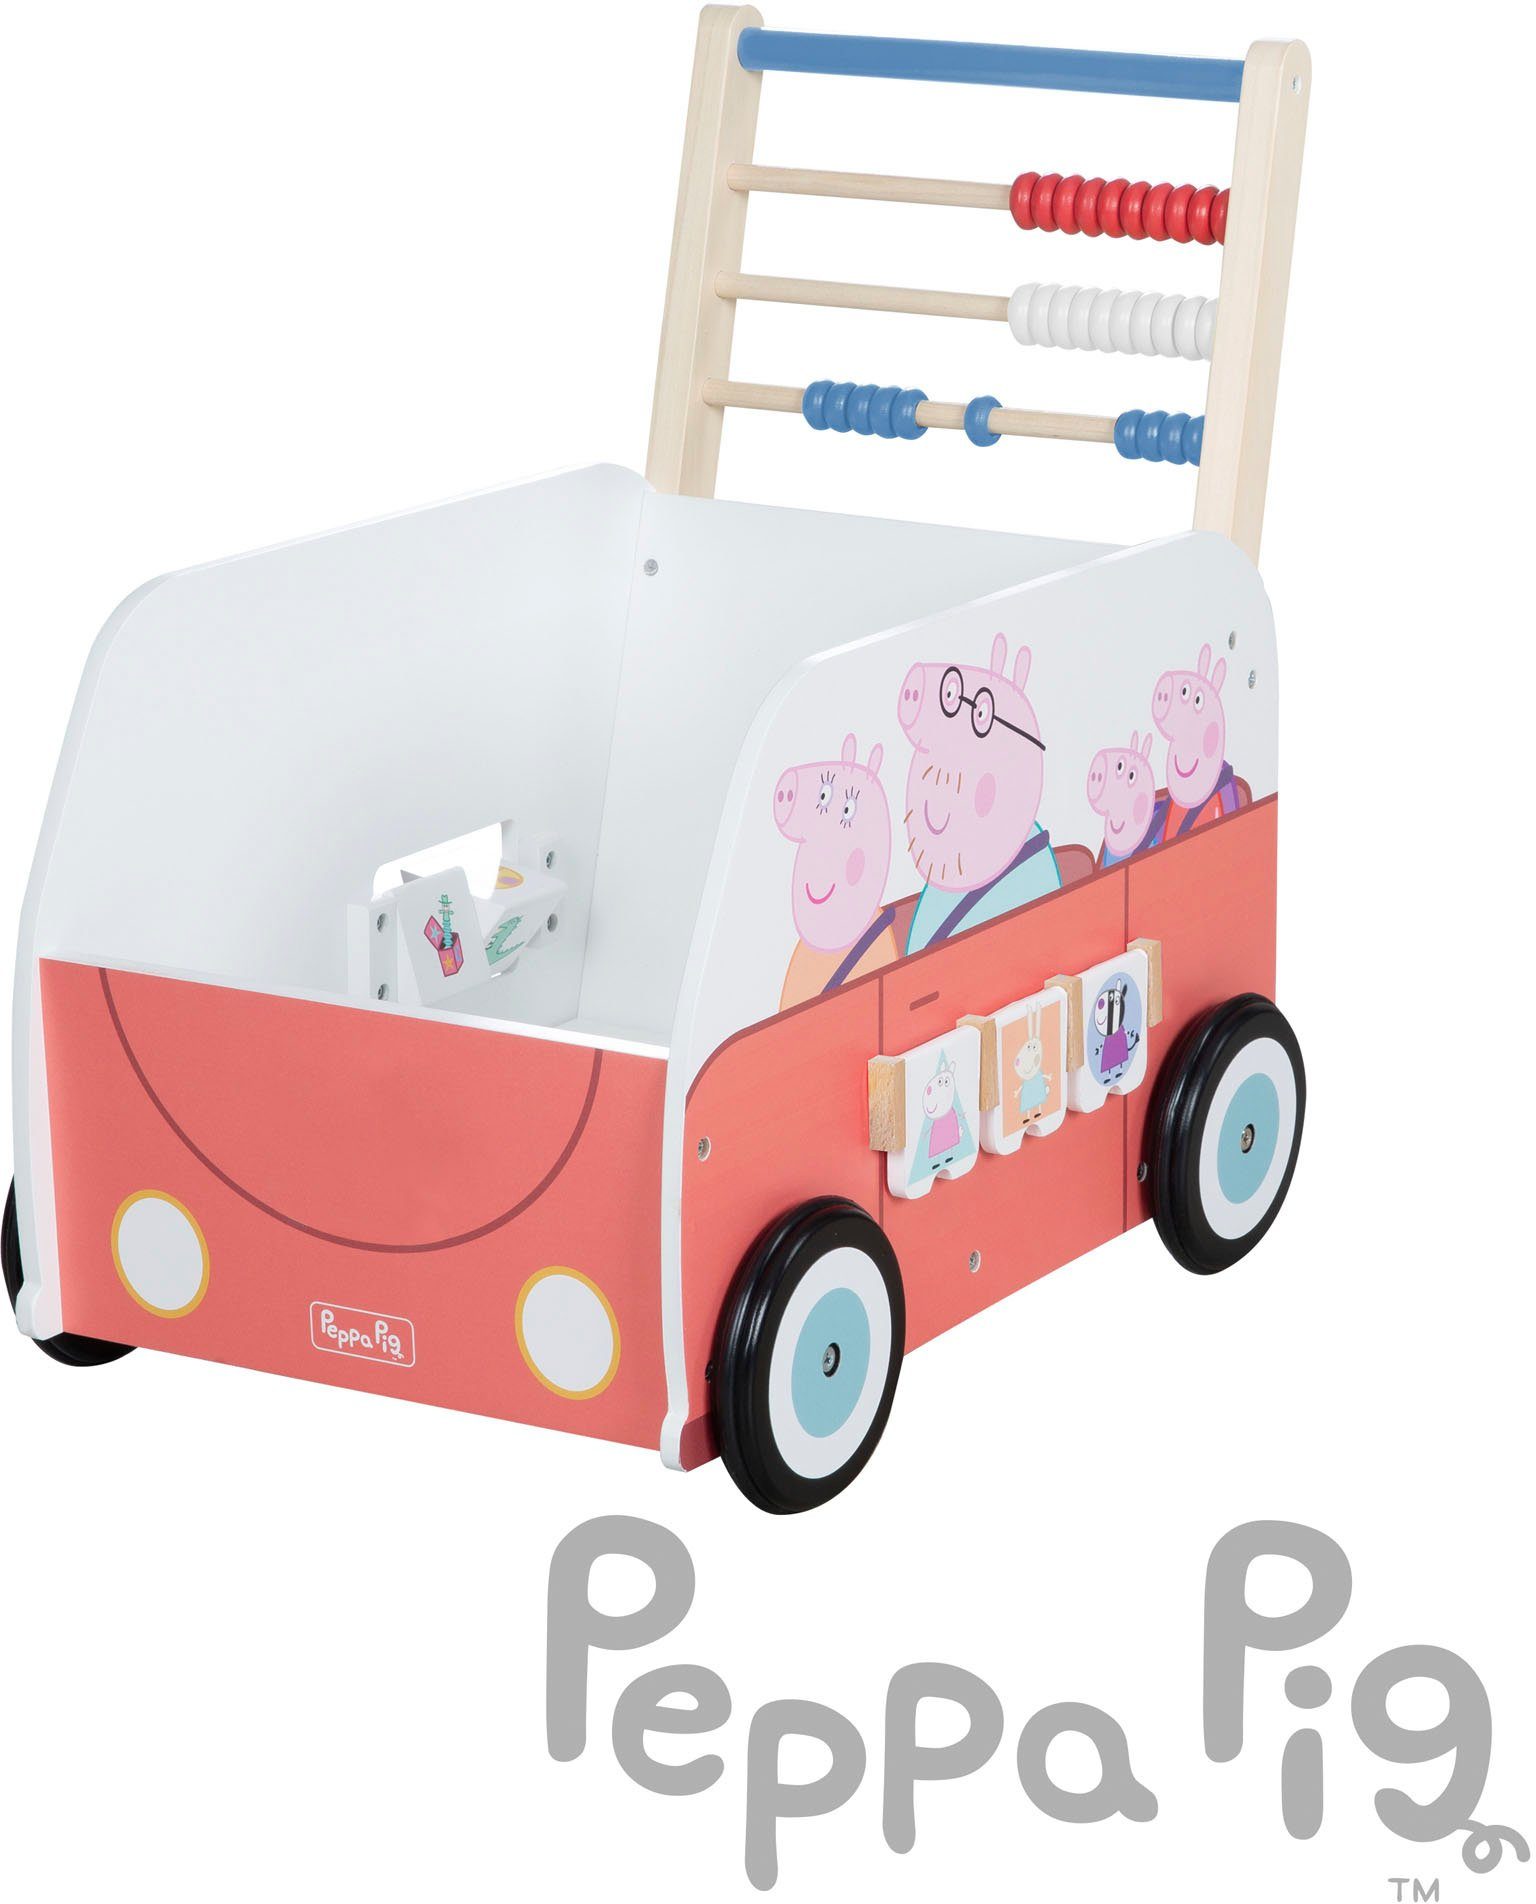 Fördert Fantasie Peppa und roba® die Fähigkeiten, Kreativität Lauflernwagen die motorischen Pig, Holzspielzeug, die